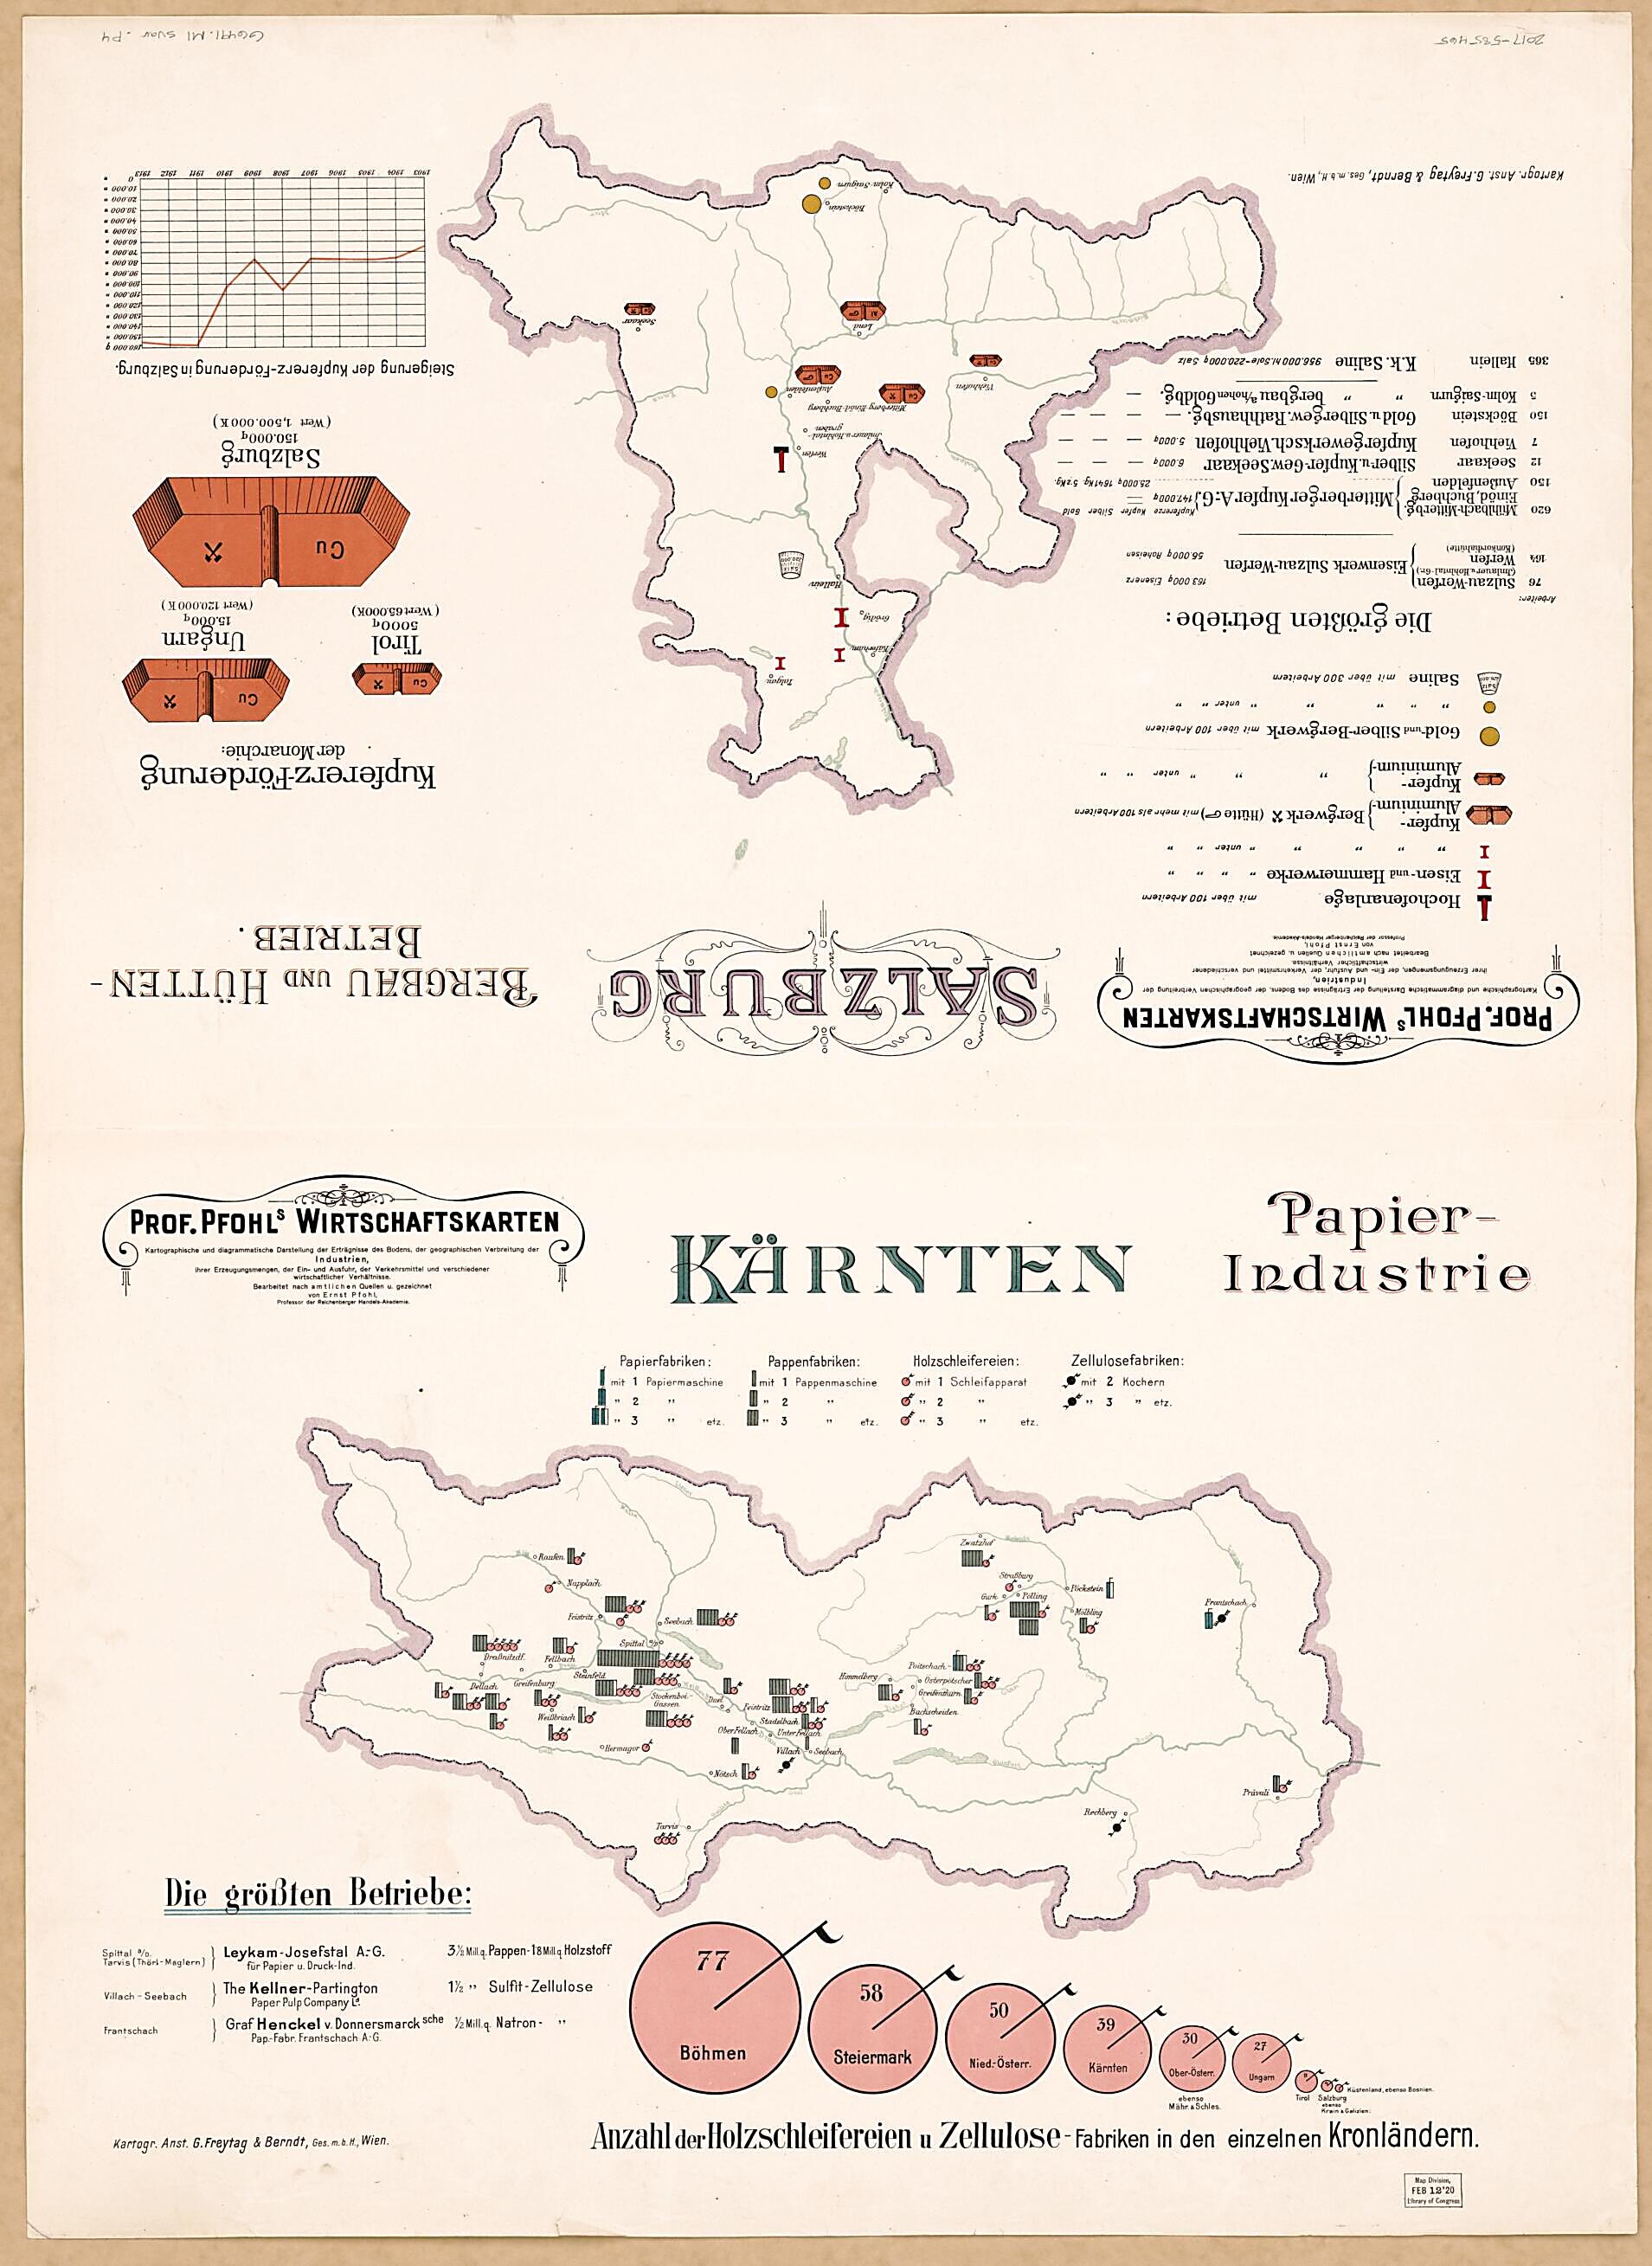 This old map of Karnten Papier-Industrie; Salzburg Bergbau Und Huttenbetrieb from Prof. Pfohls Wirtschaftskarten from 1913 was created by Ernst Pfohl in 1913